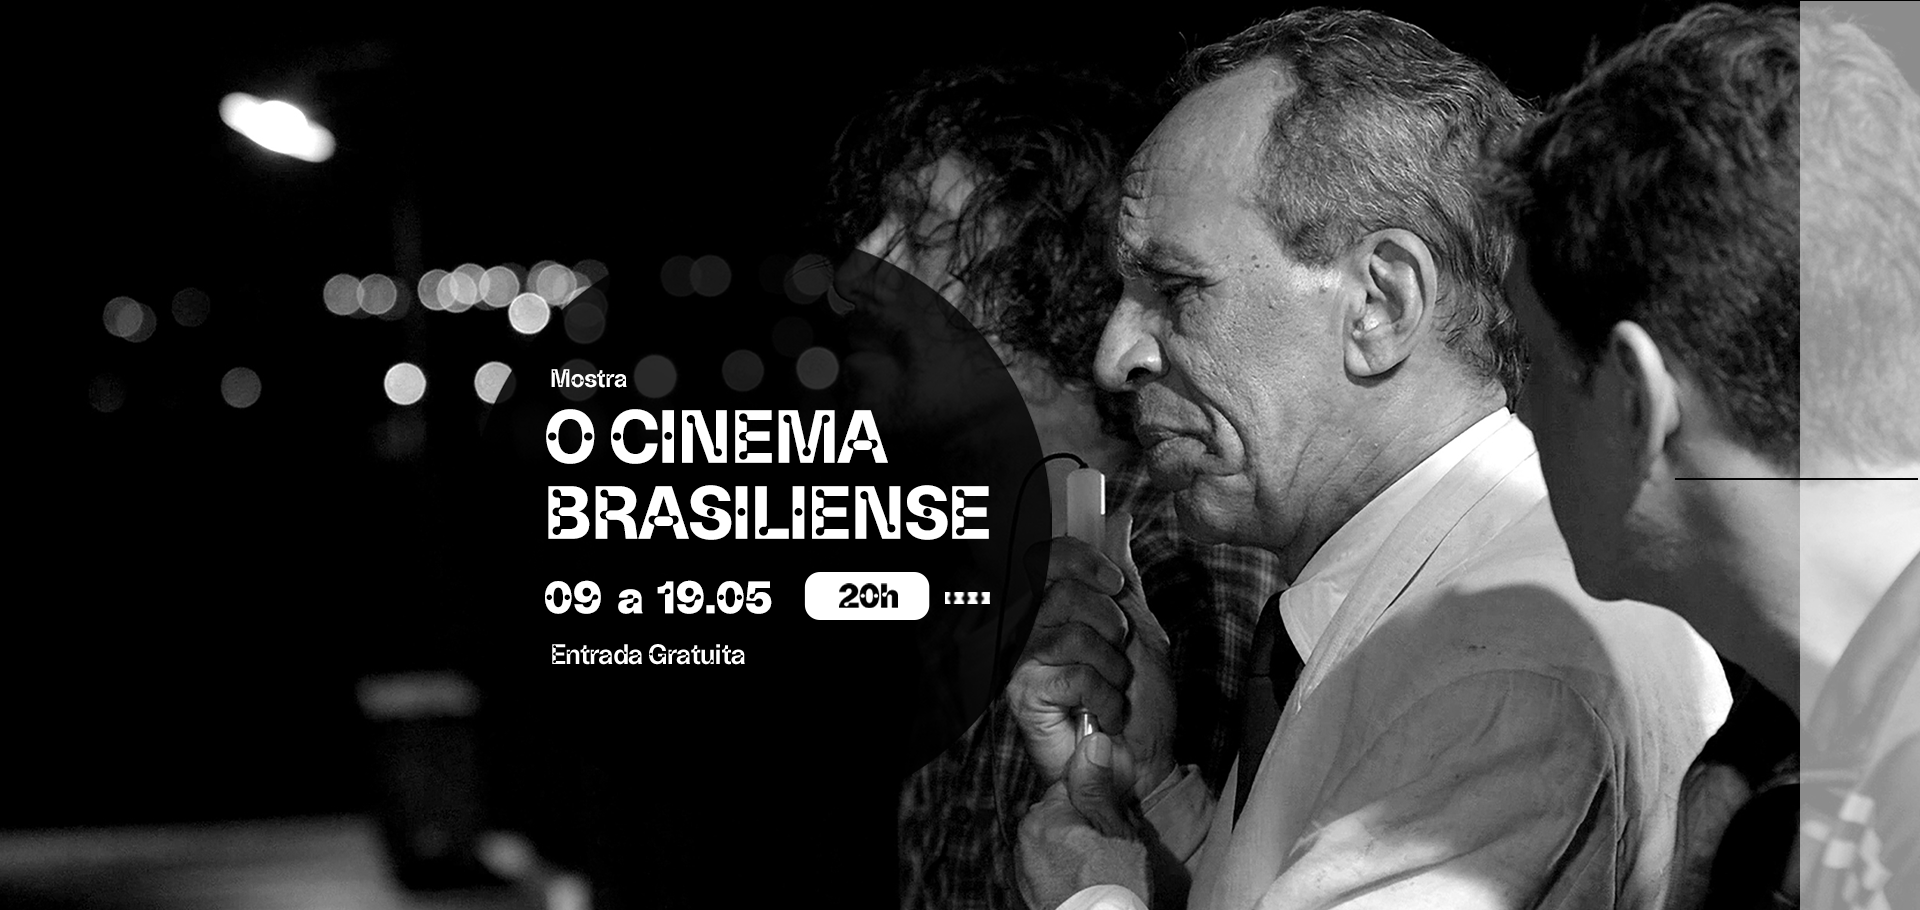 foto preto e branco de homem com cabelos curtos, grisalho, com entrada e camisa branca. texto: mostra o cinema brasiliense. 9 a 19 de maio, às 20h, entrada gratuita.